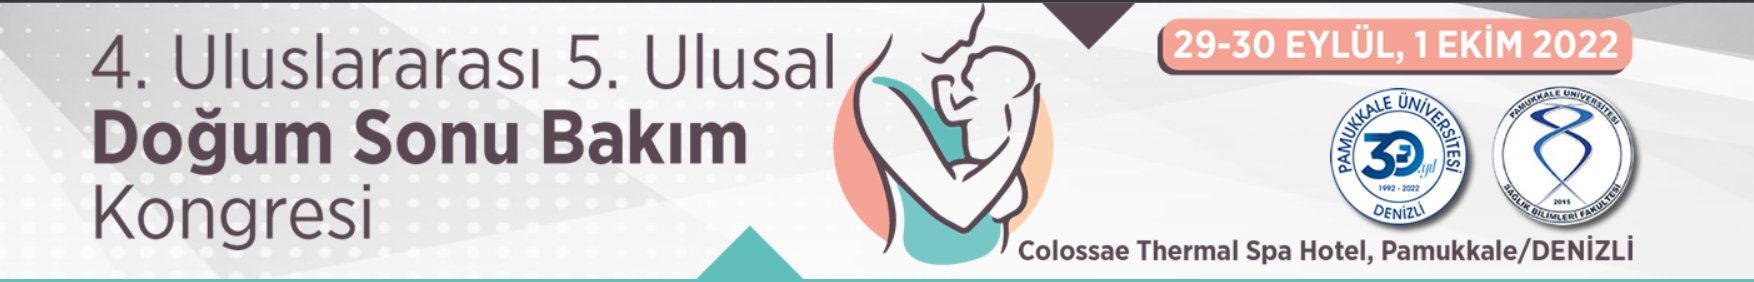 4. Uluslararası 5. Ulusal Doğum Sonu Bakım Kongresi